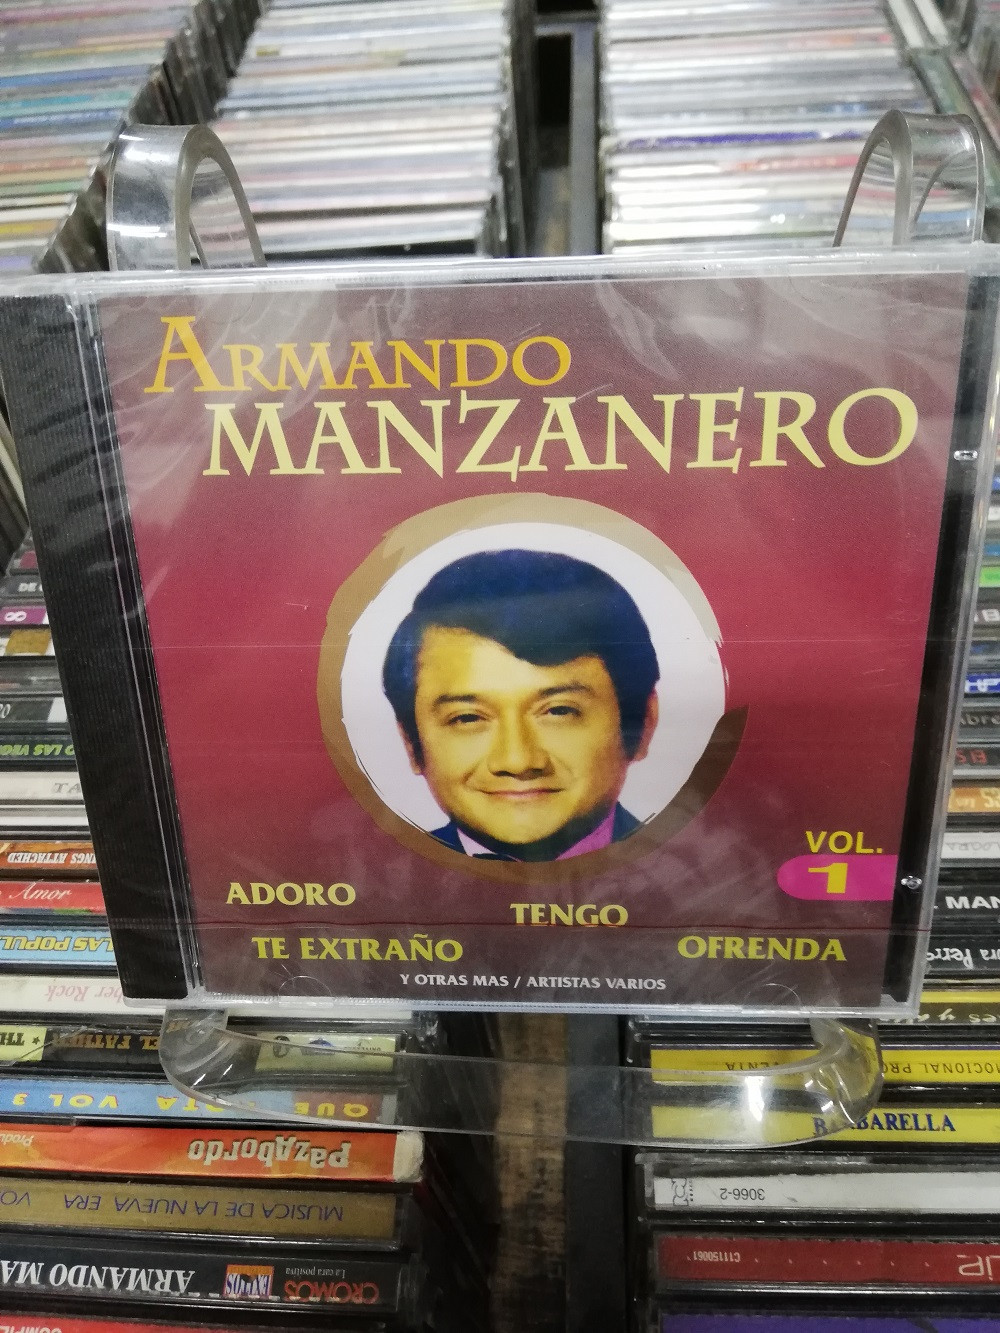 Imagen CD ARMANDO MANZANERO VOL. 1 1